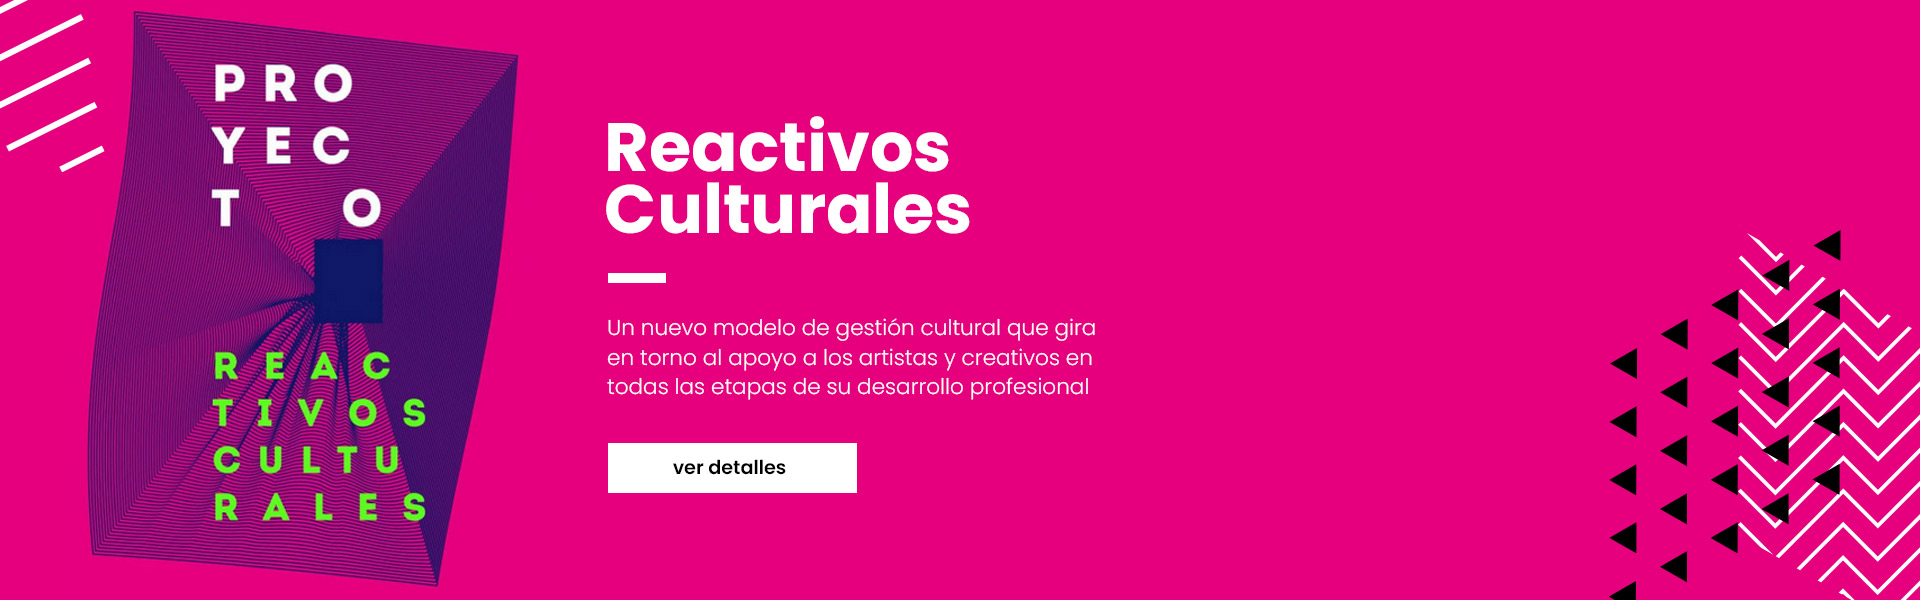 Reactivos Culturales Ayuntamiento de Murcia